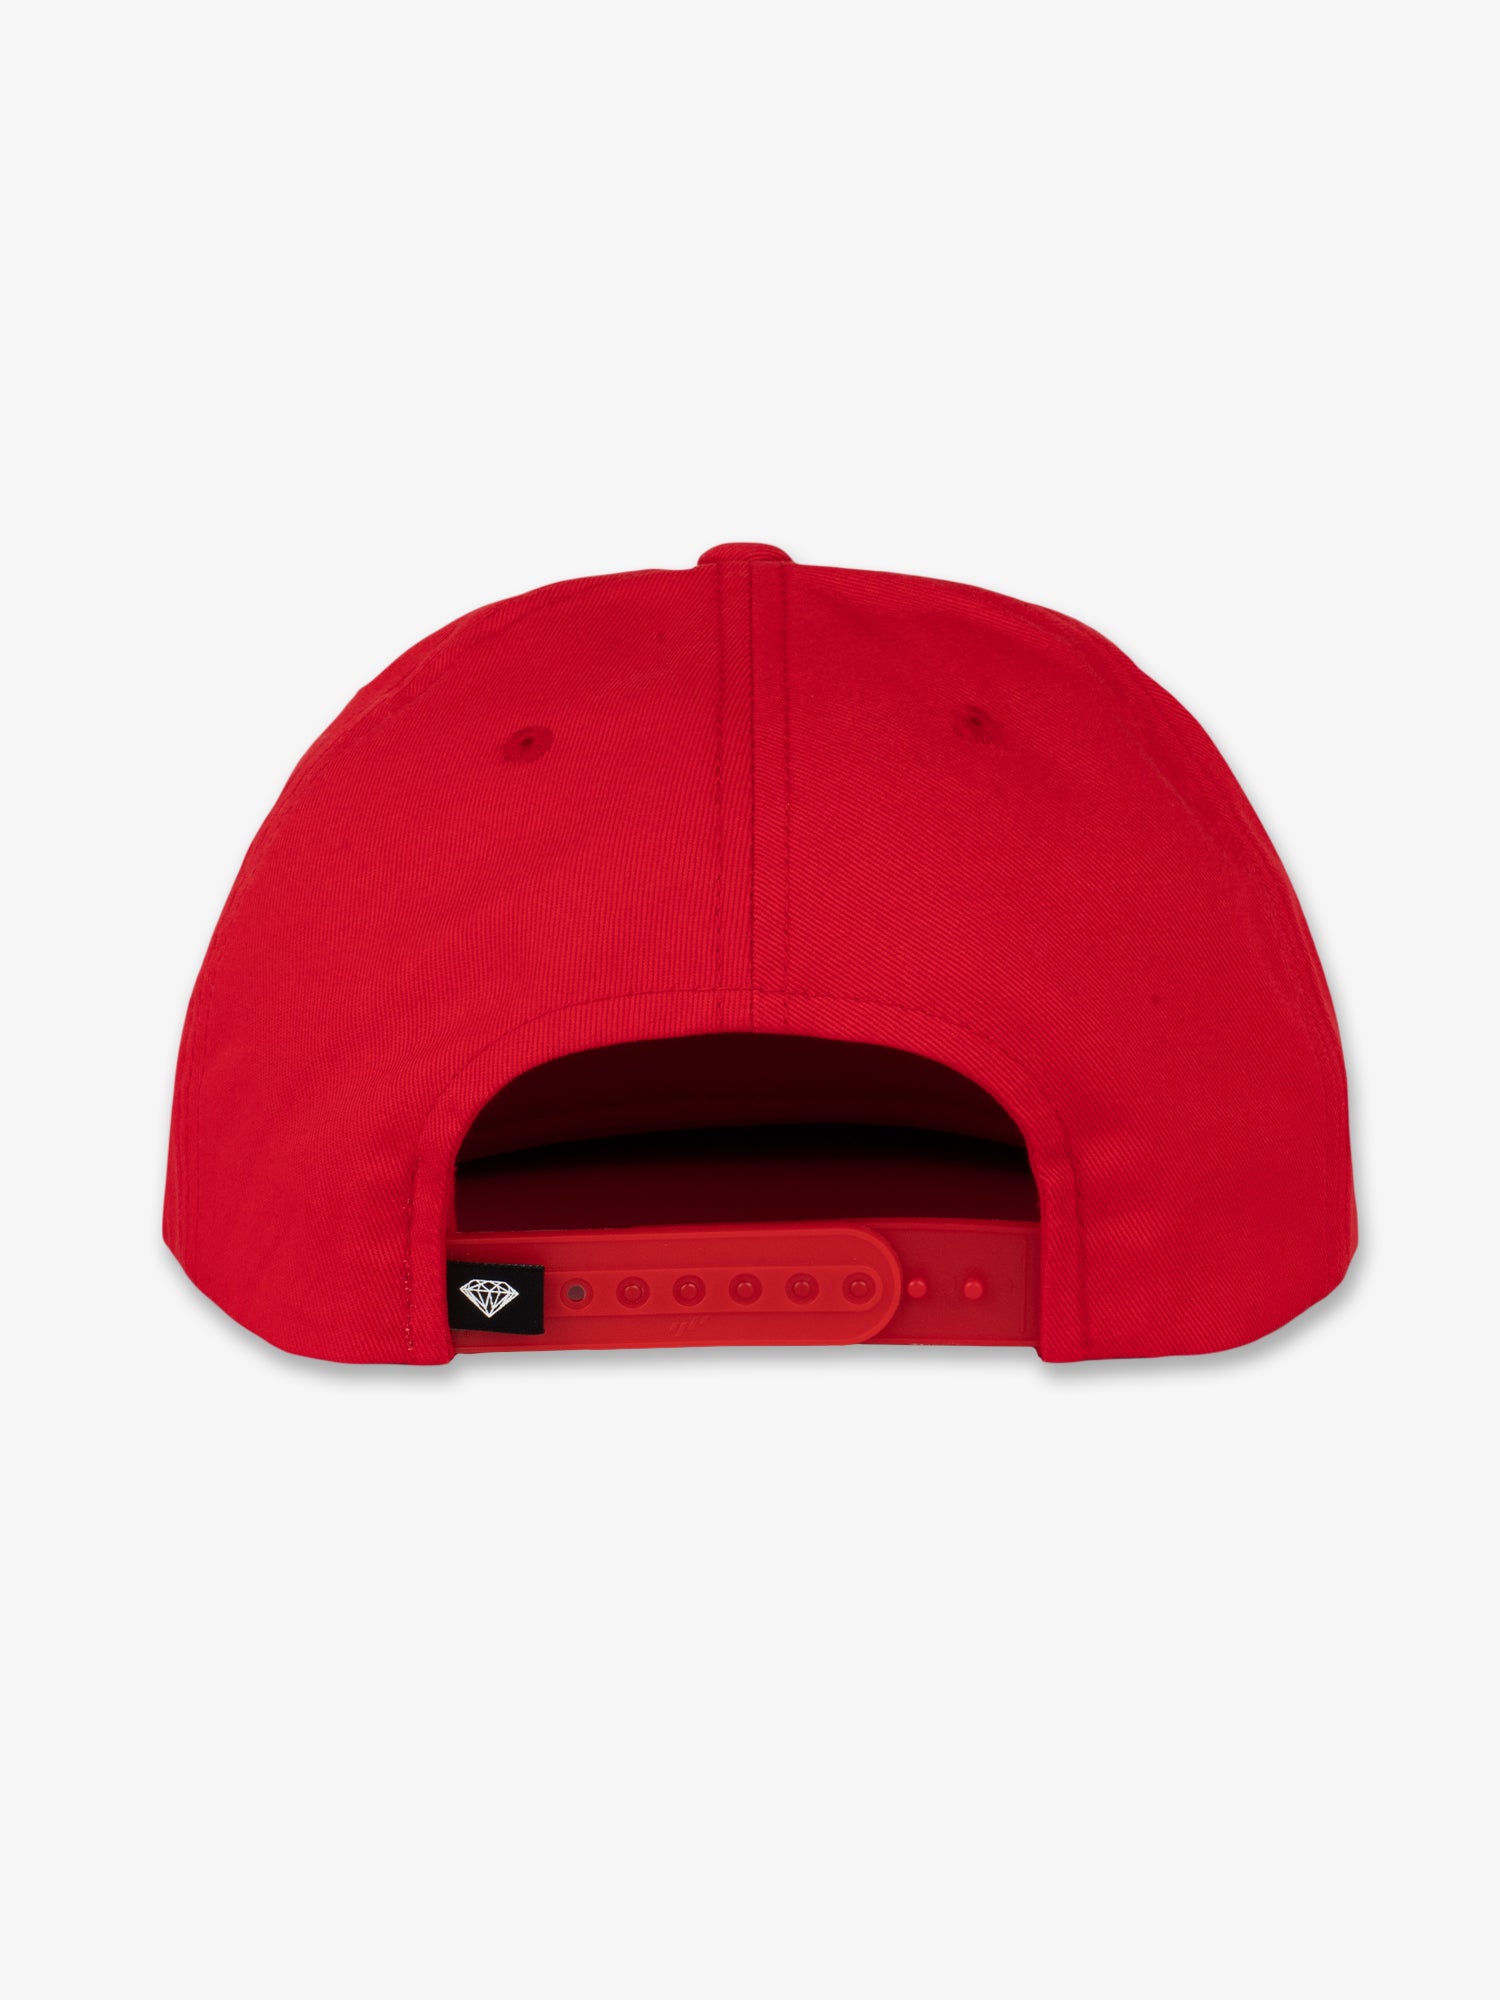 OG Seal Hat - Red